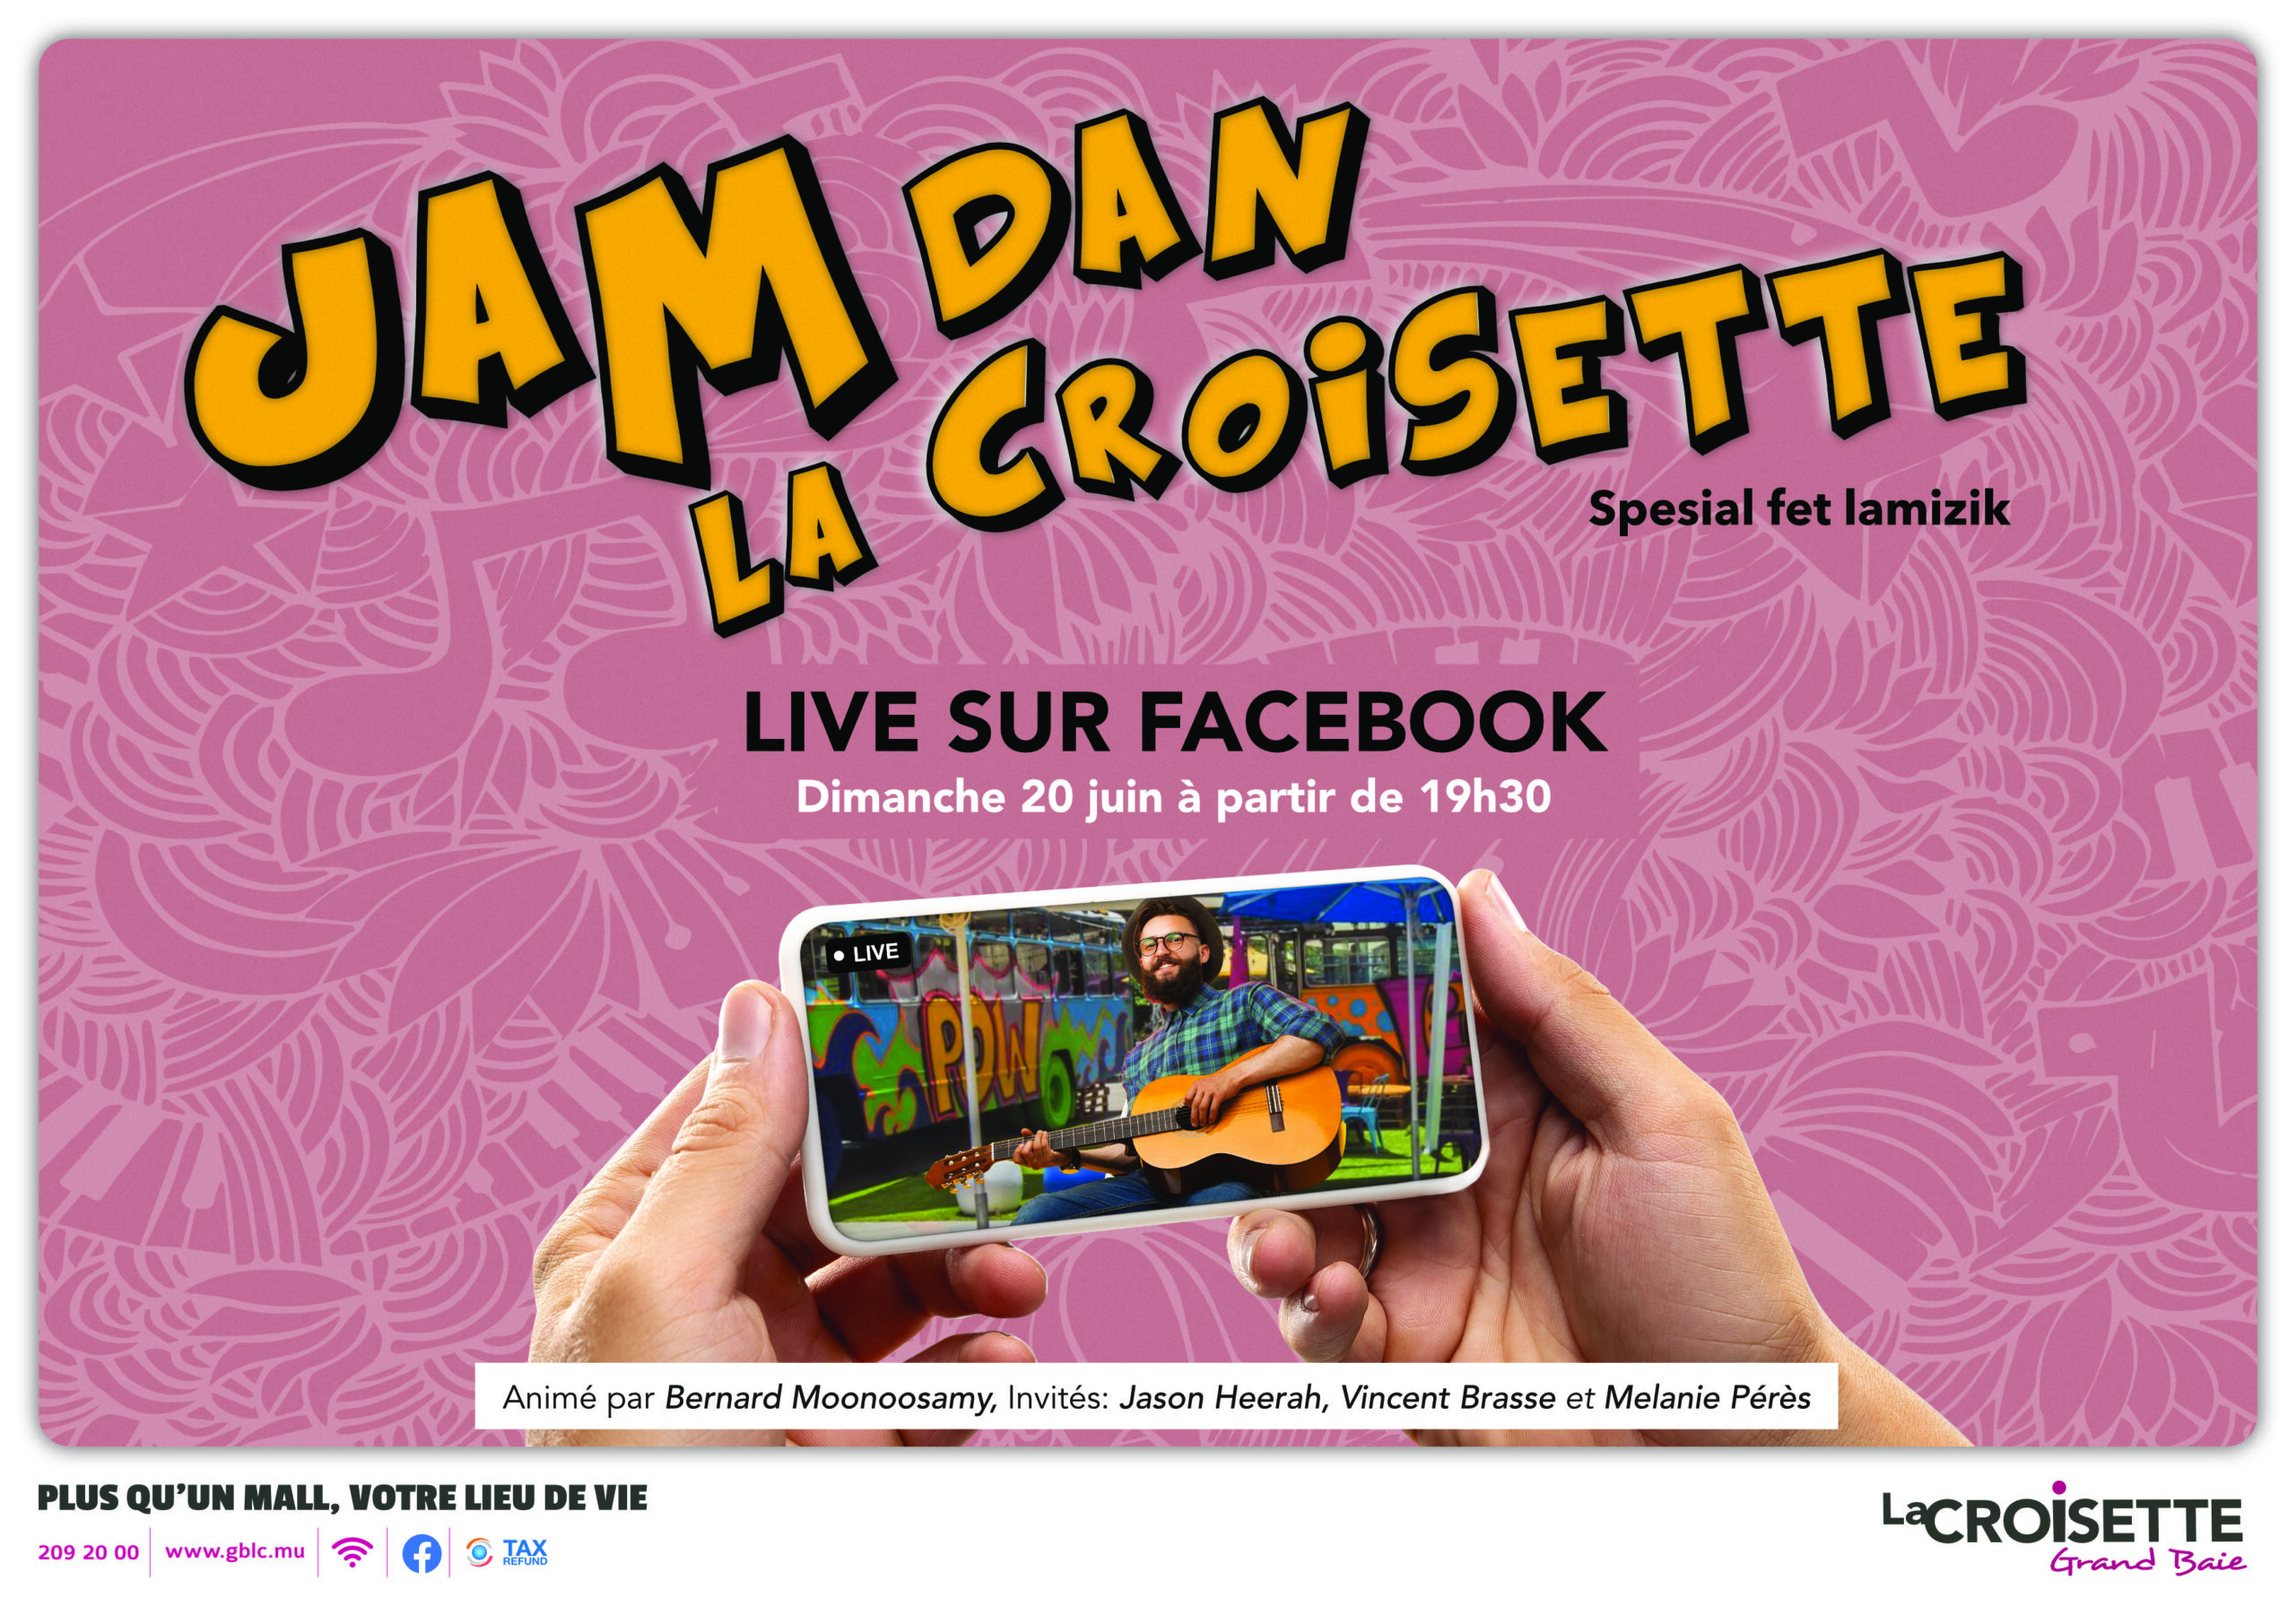 Jam Dan La Croisette LIVE sur Facebook